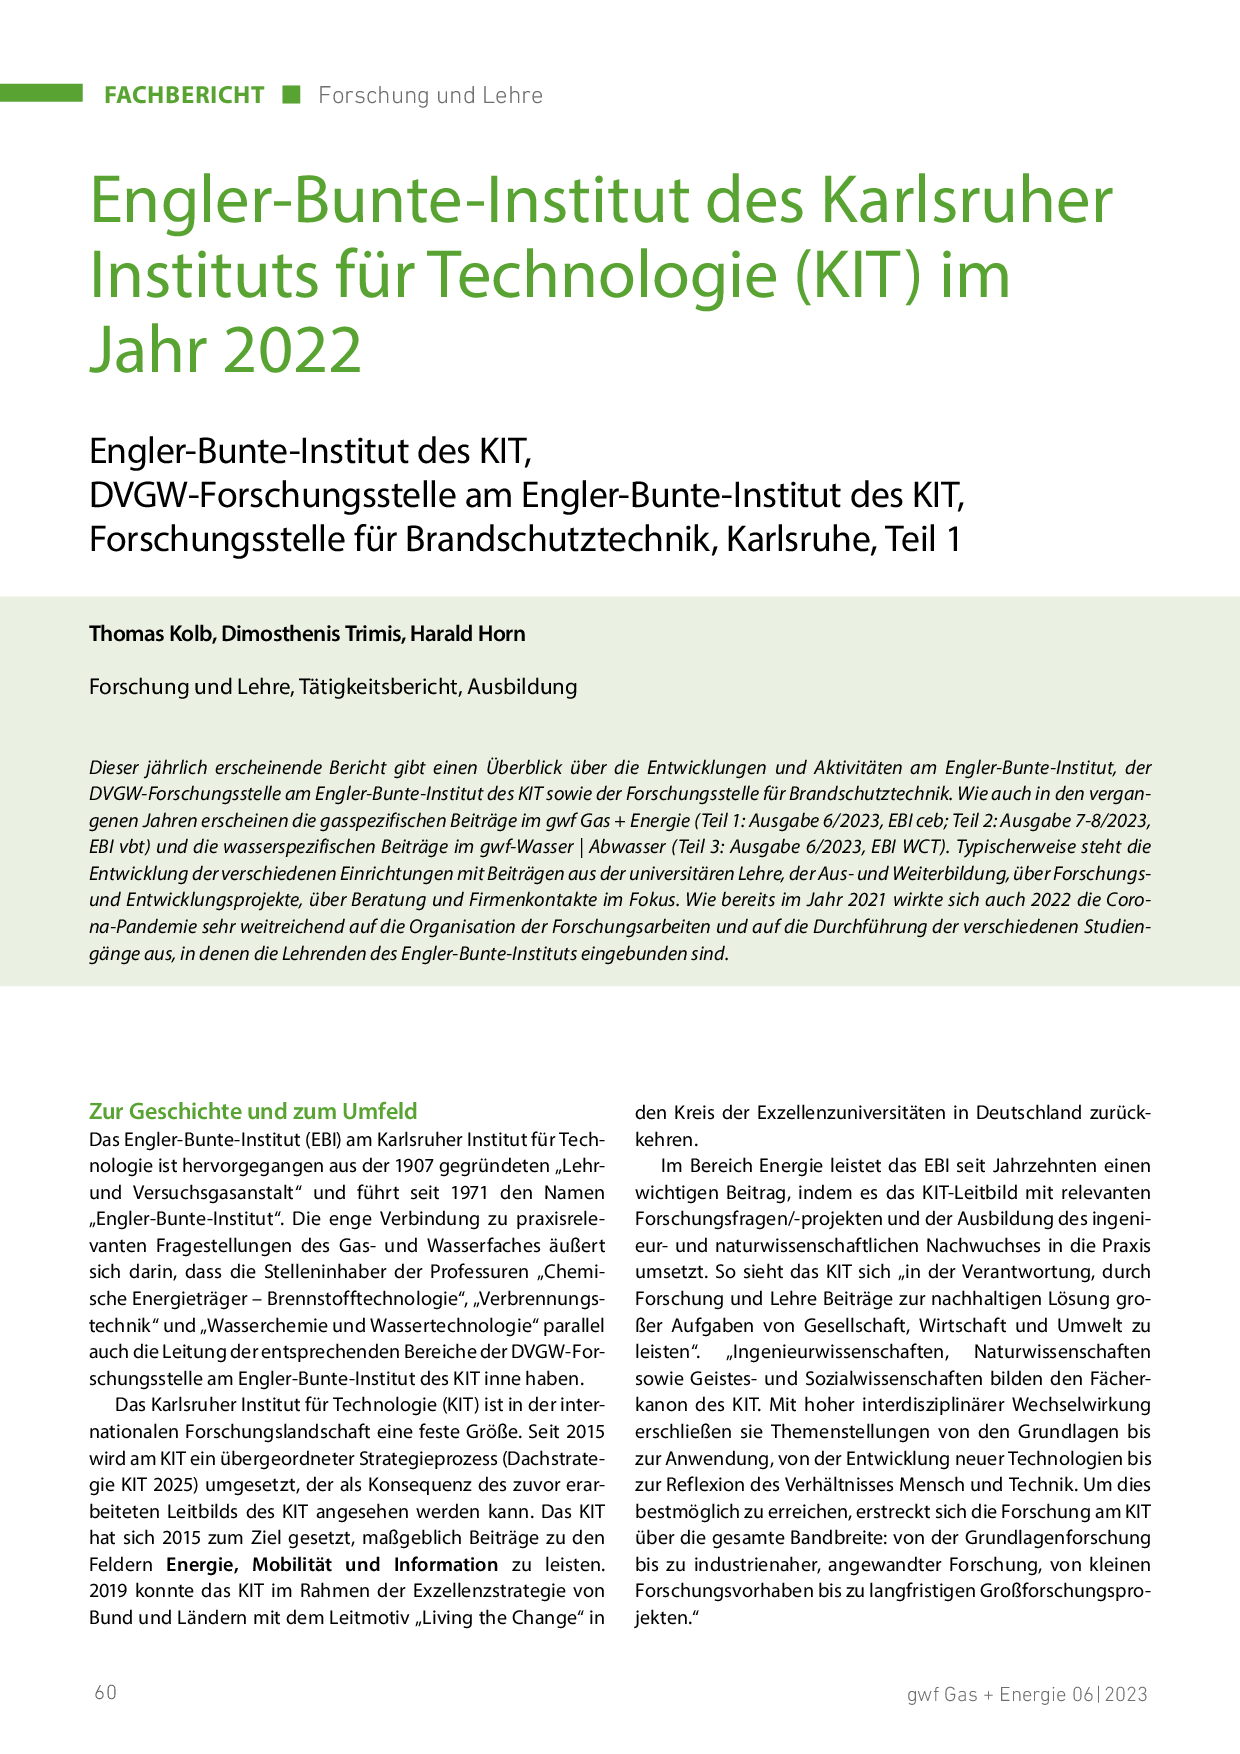 Engler-Bunte-Institut des Karlsruher Instituts für Technologie (KIT) im Jahr 2021